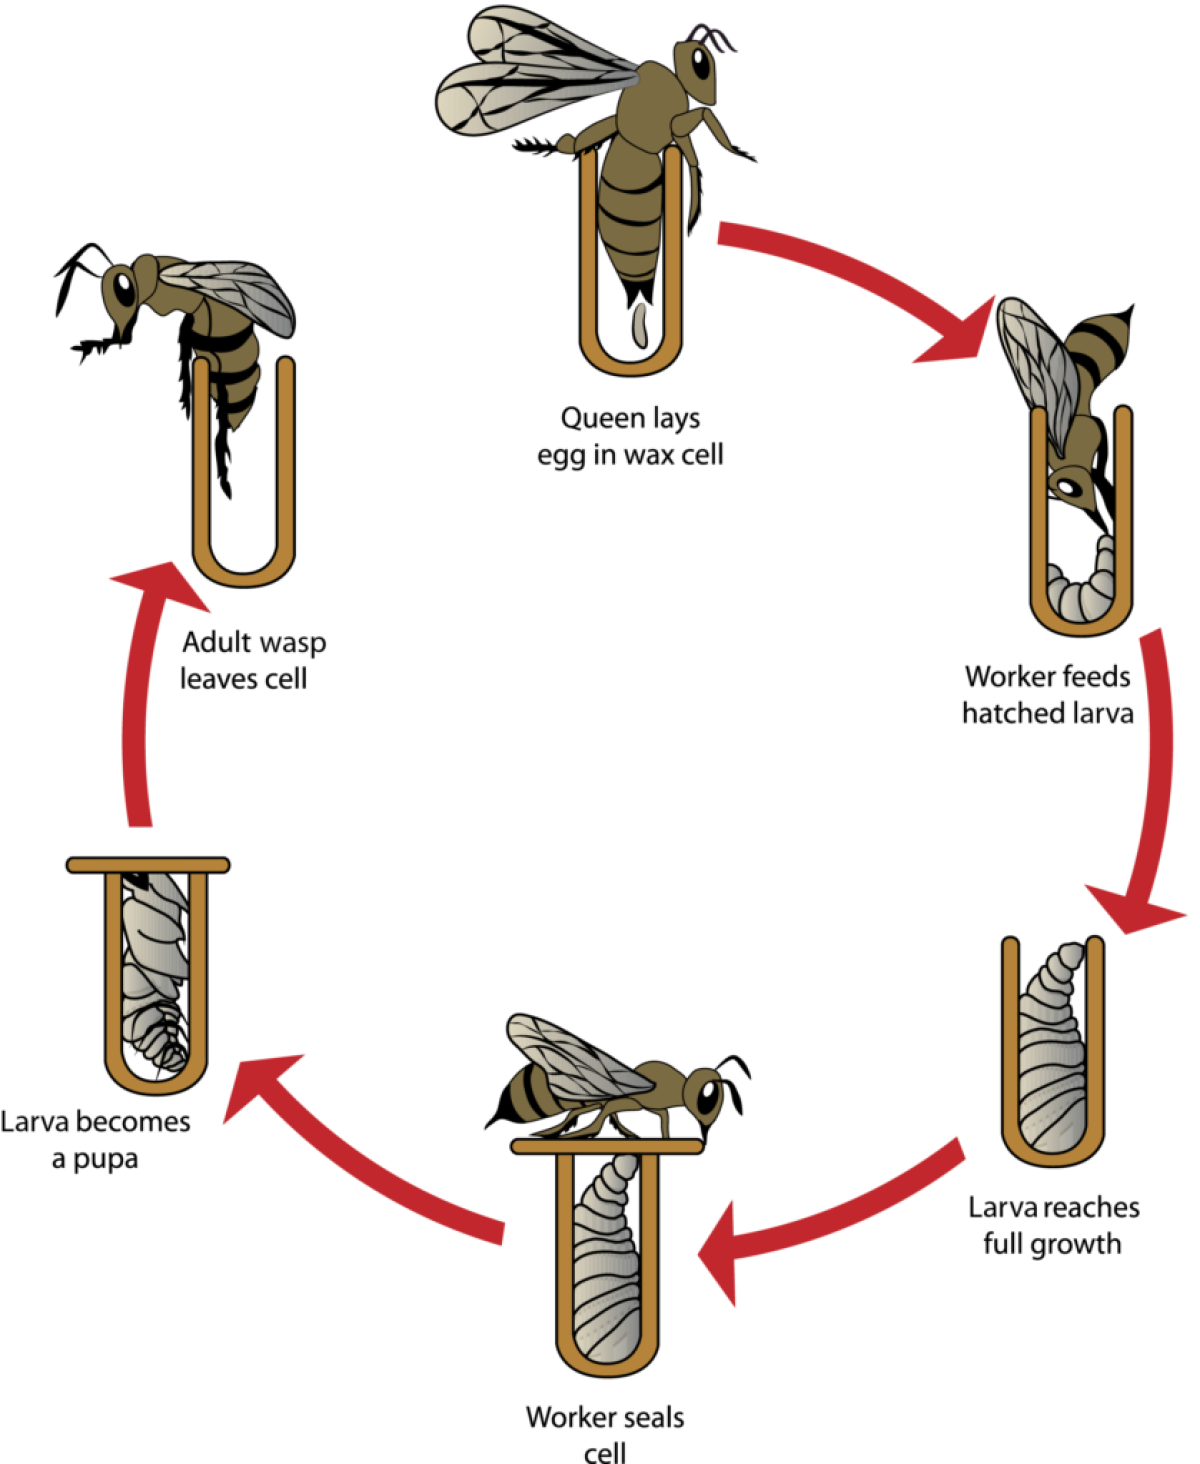 Wasp Life Cycle Diagram